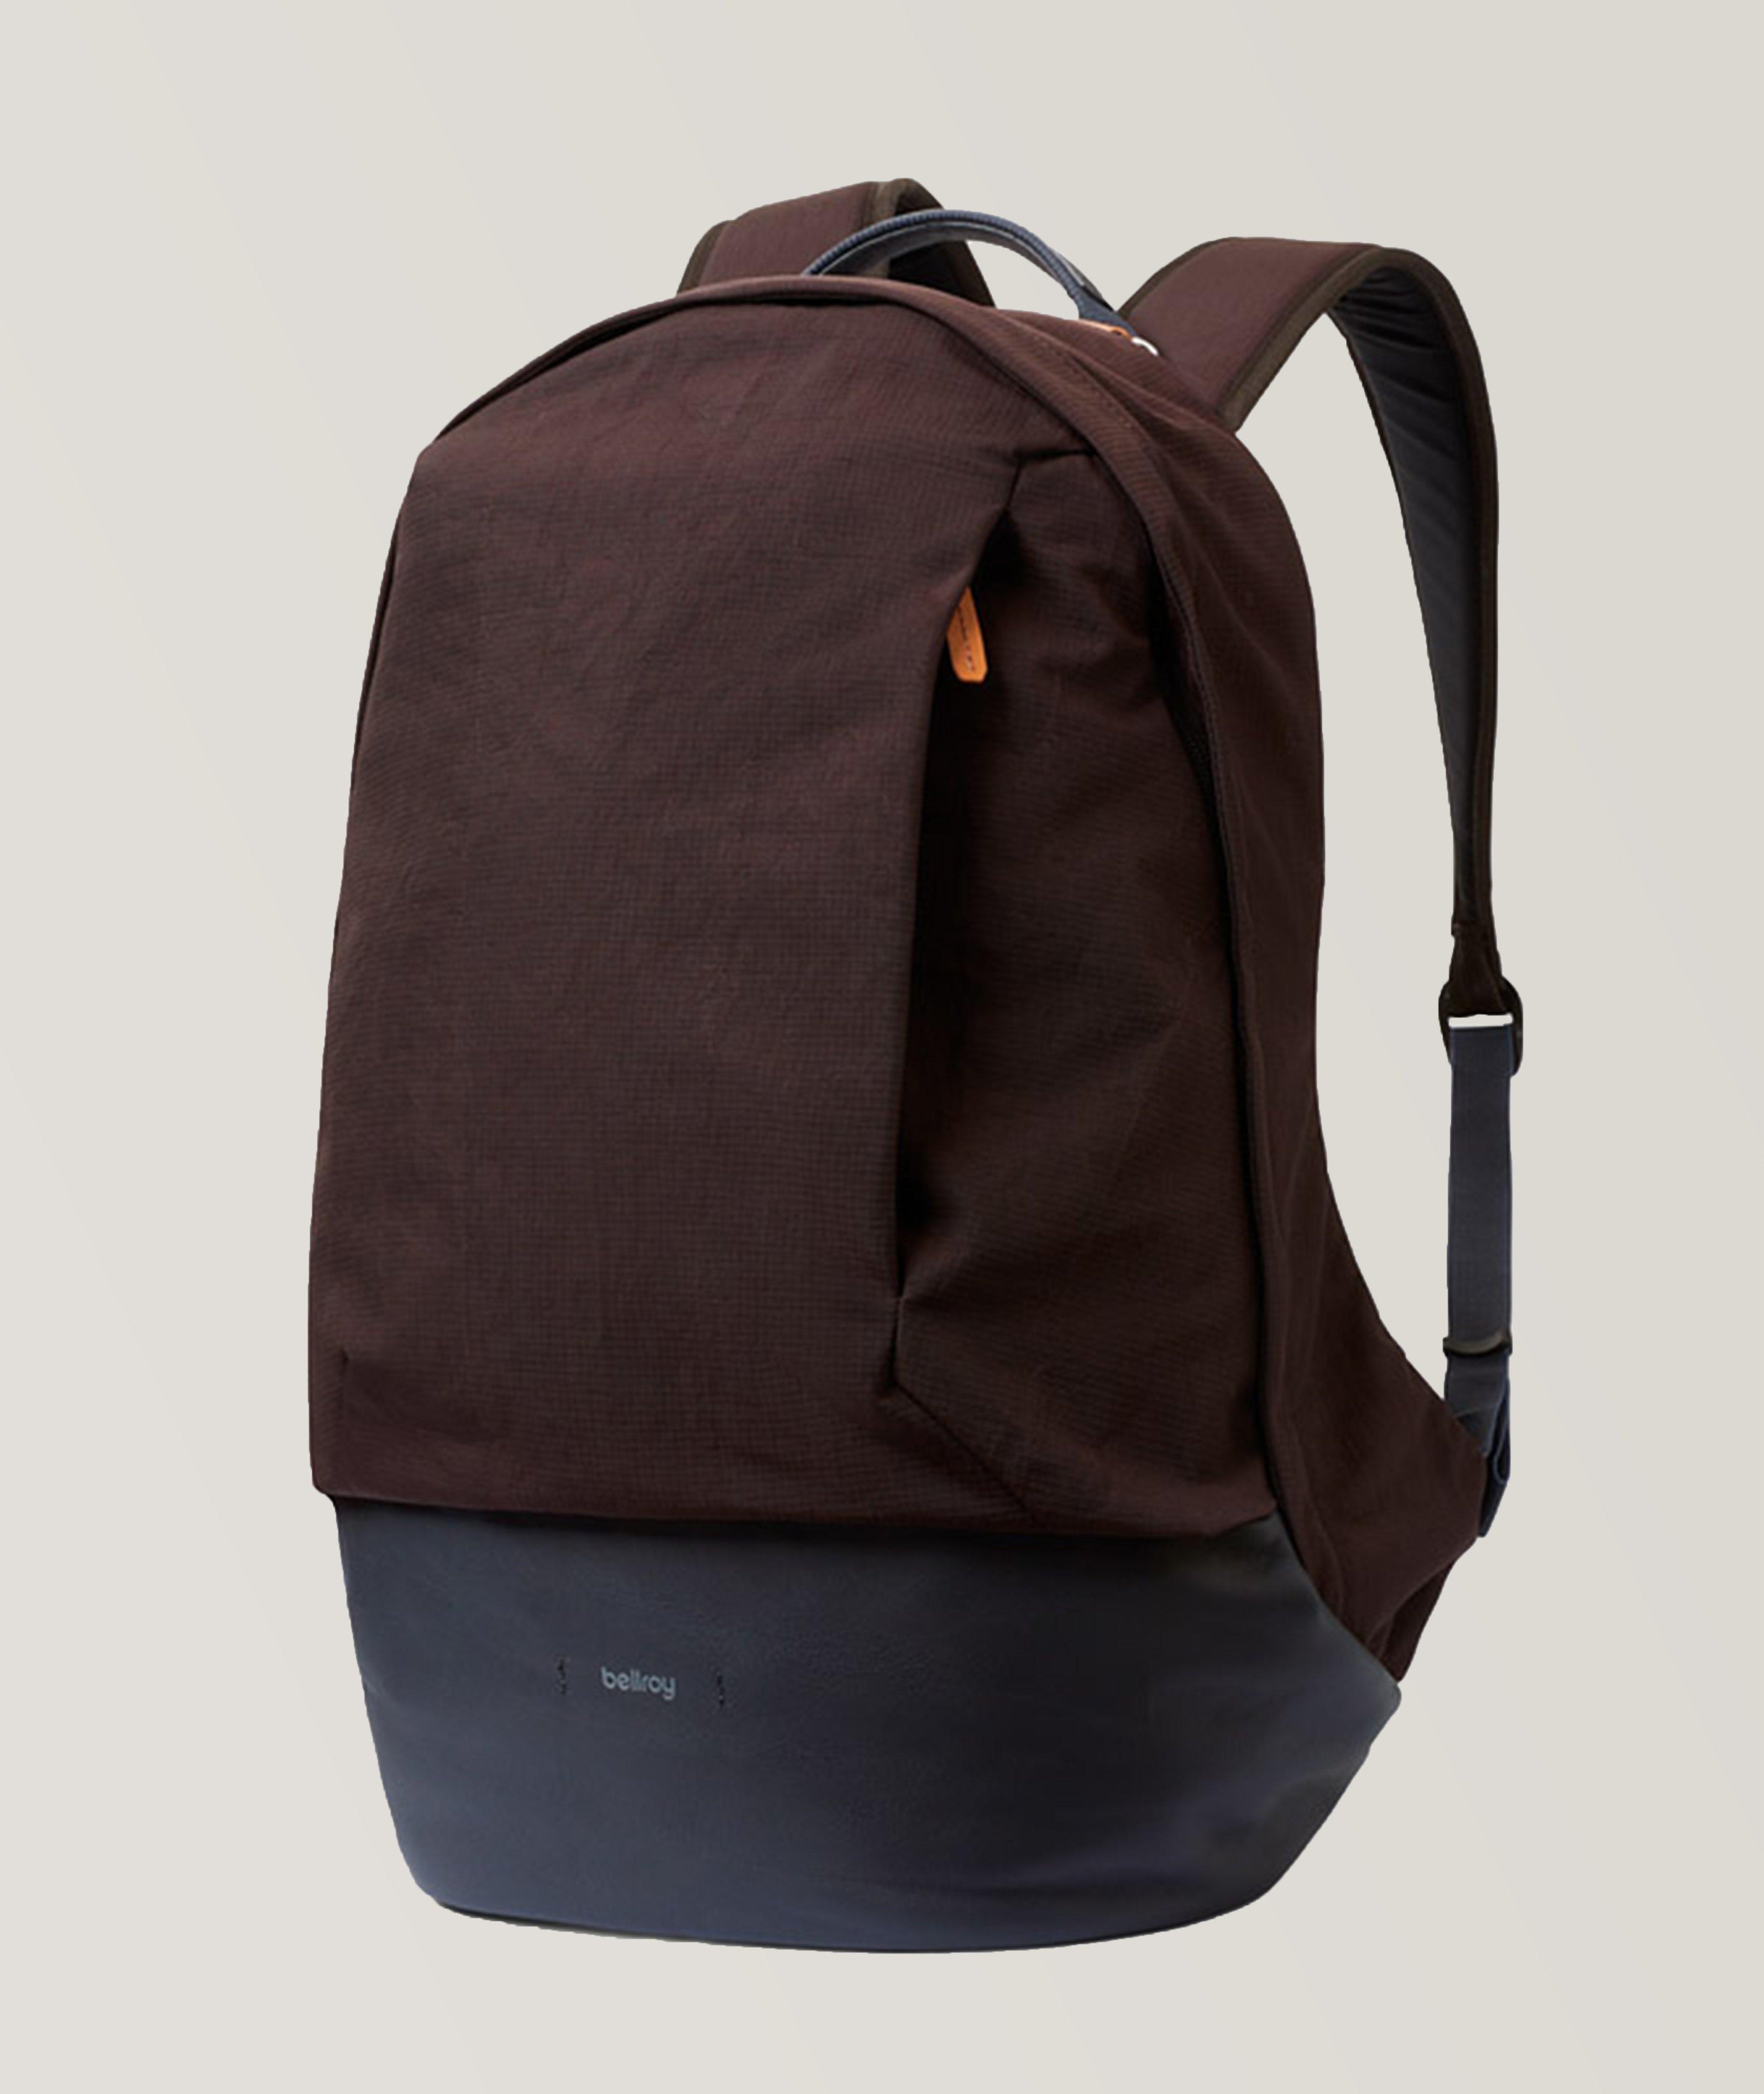 Premium Classic Backpack image 0